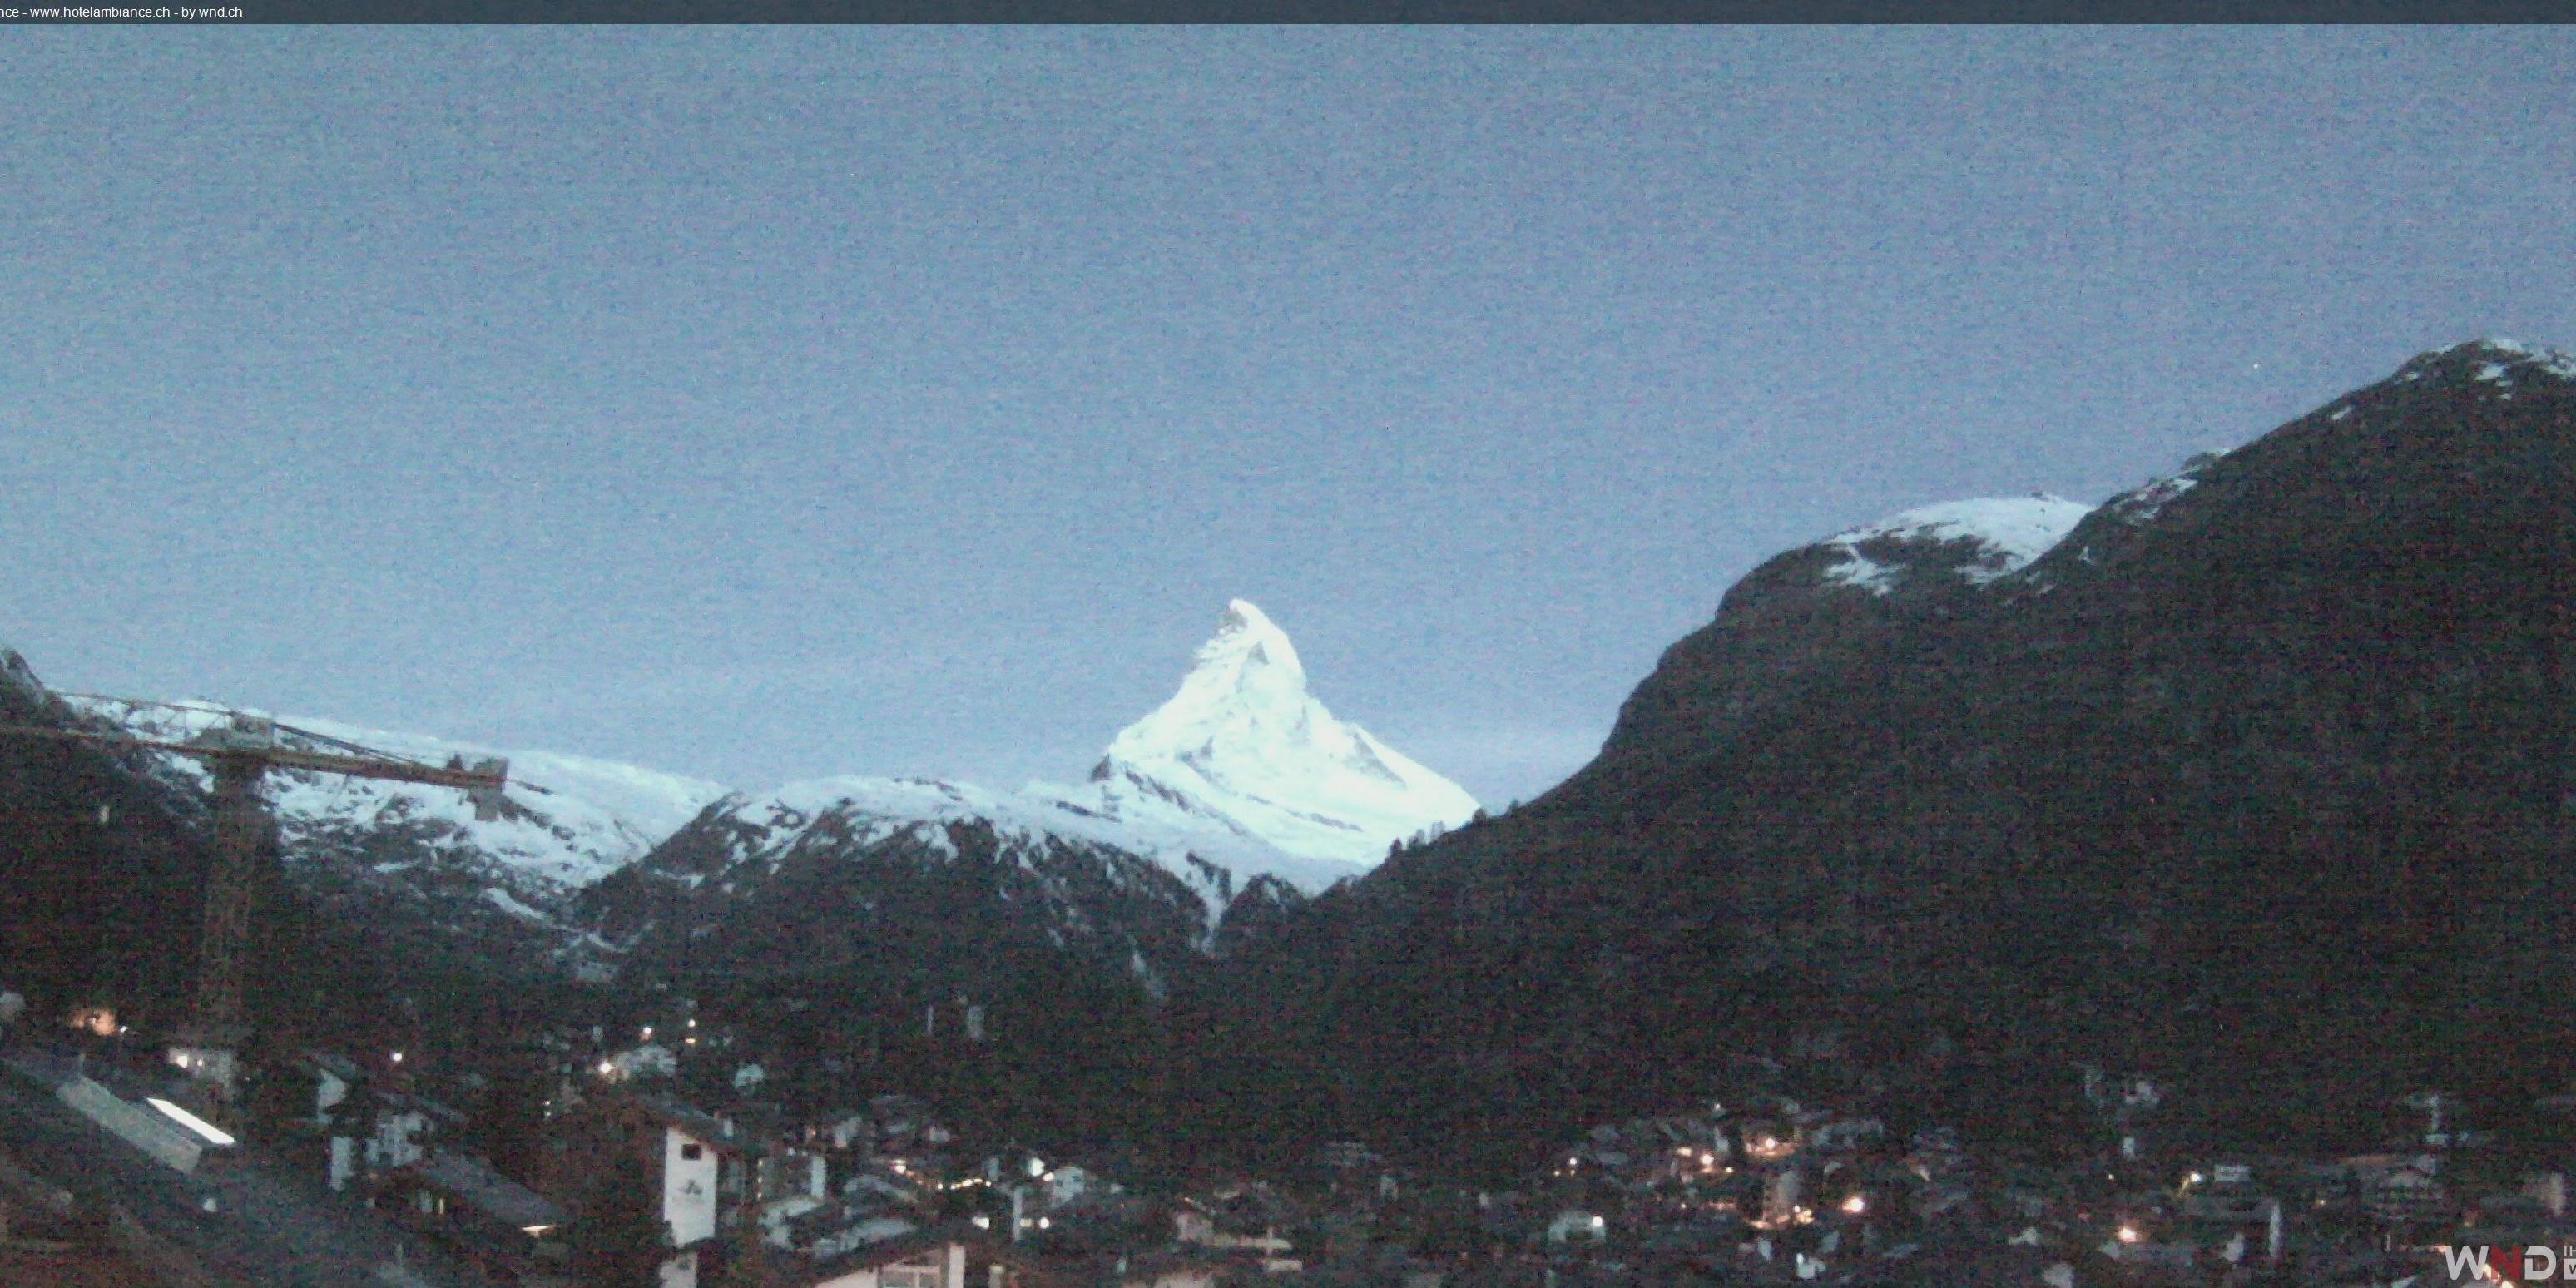 Zermatt Wed. 05:19